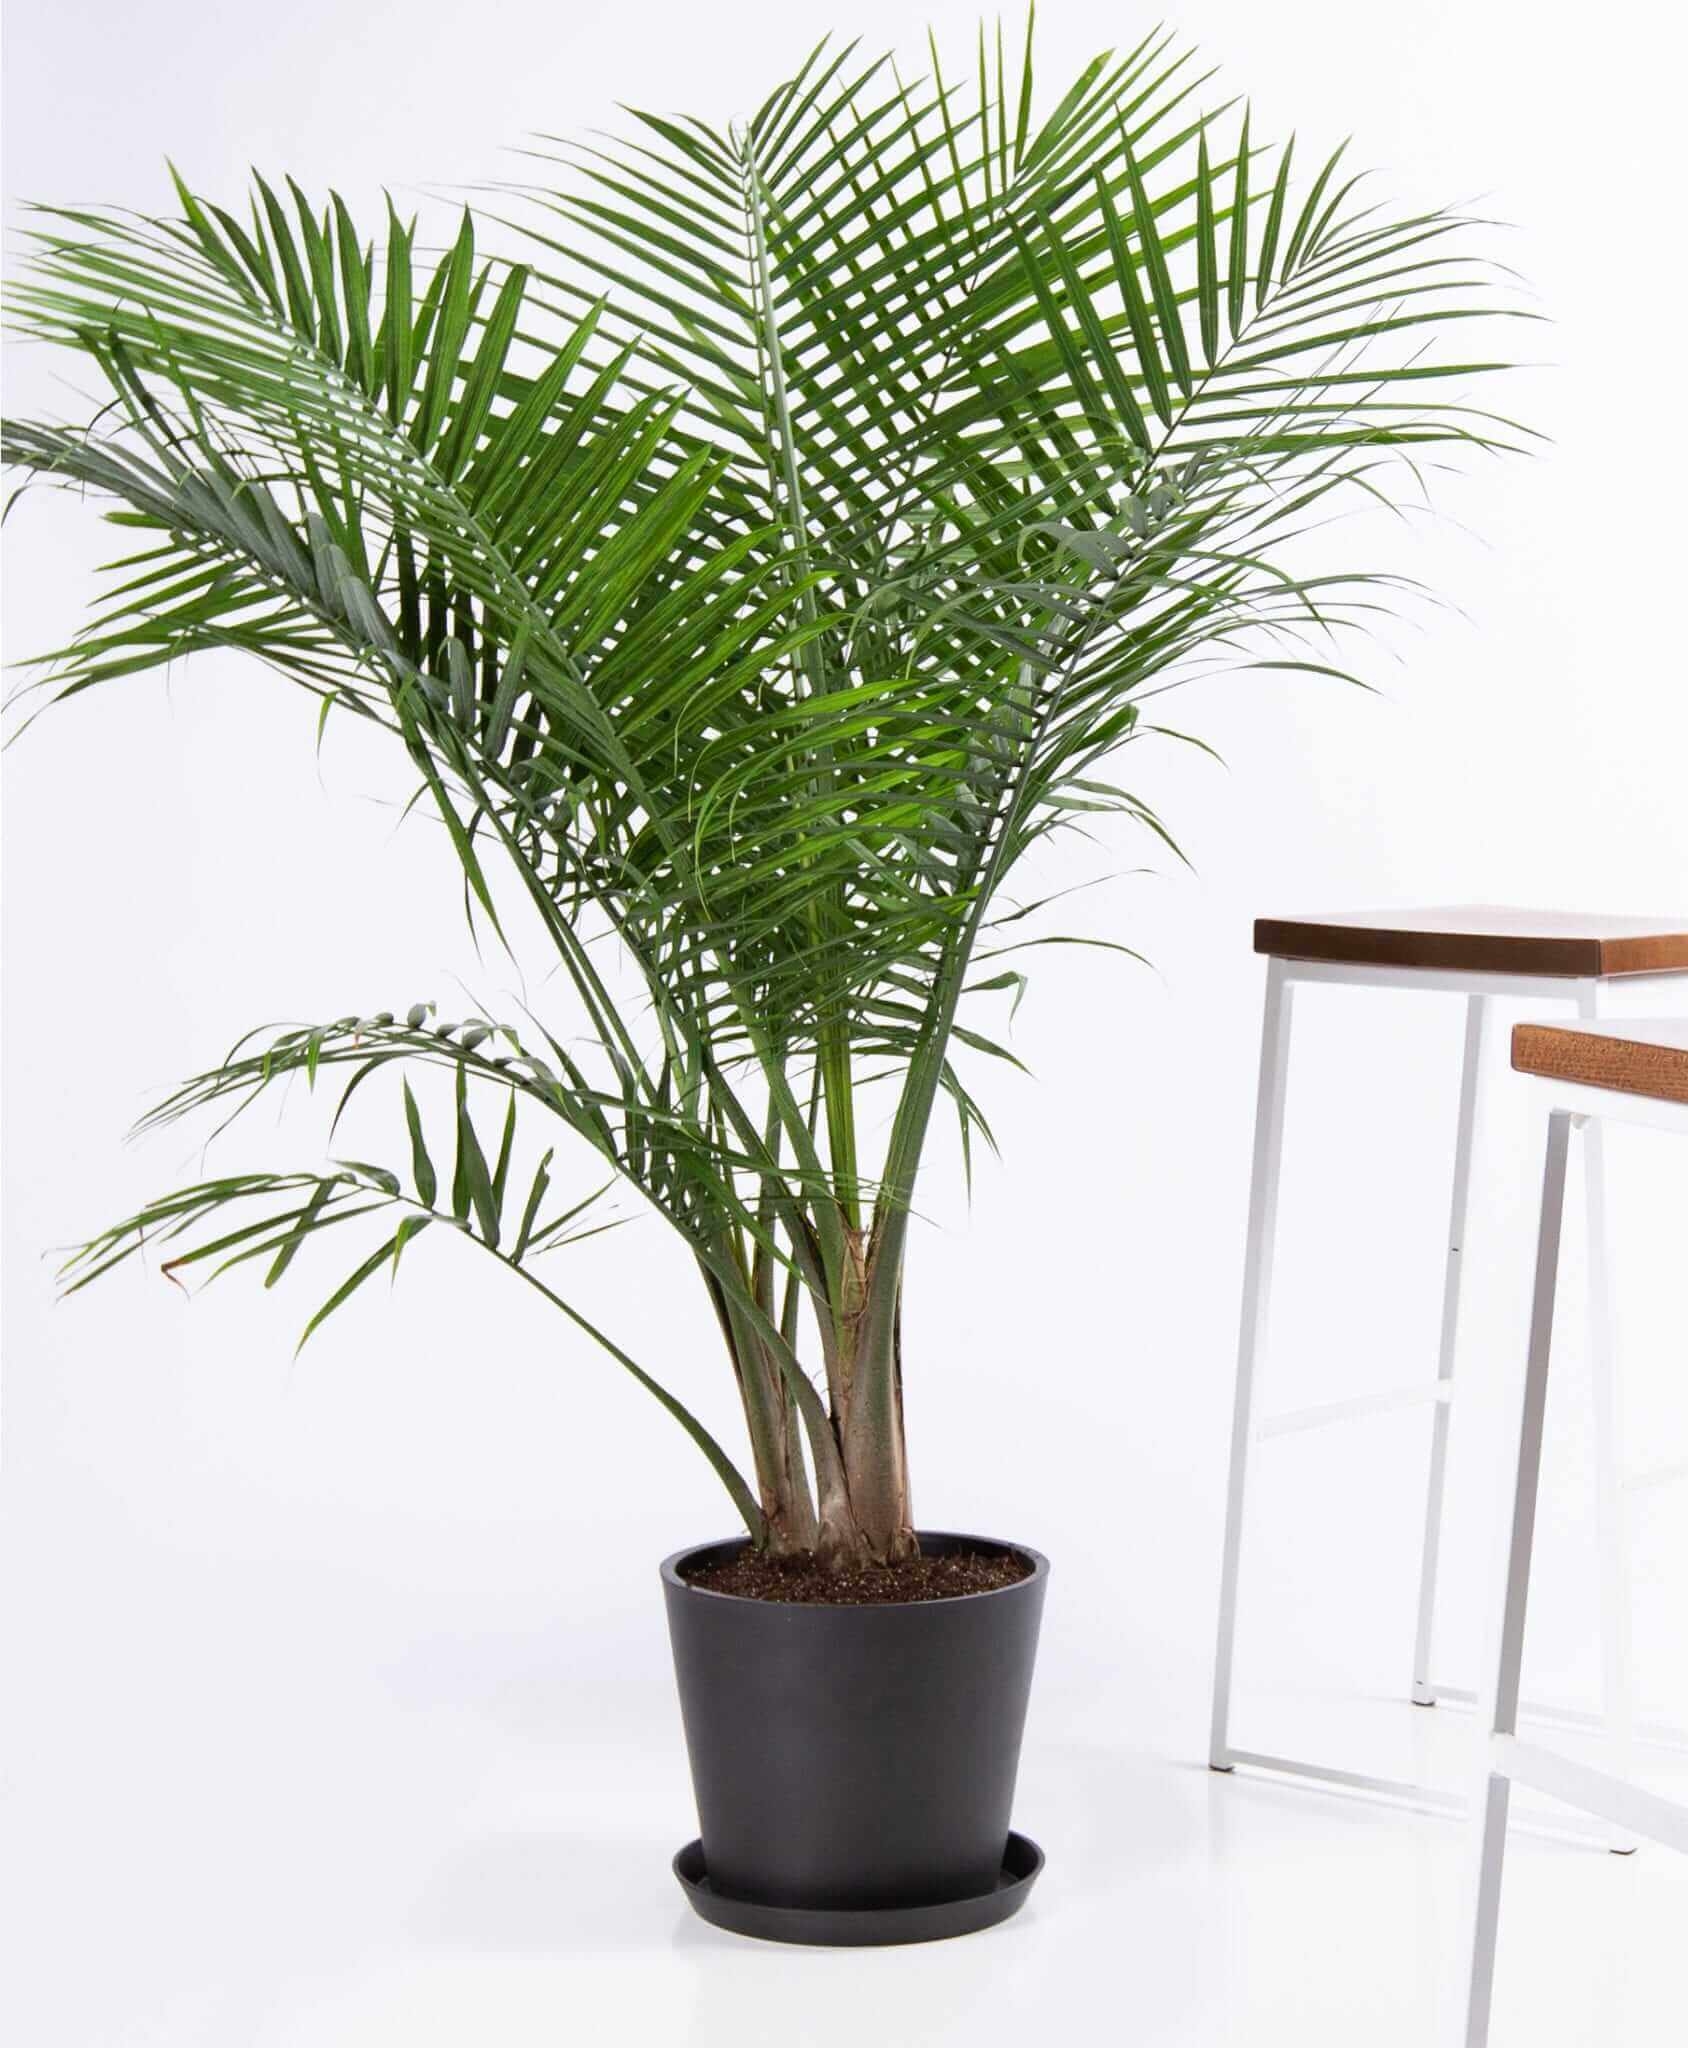 Majesty palm - Charcoal - Image 0